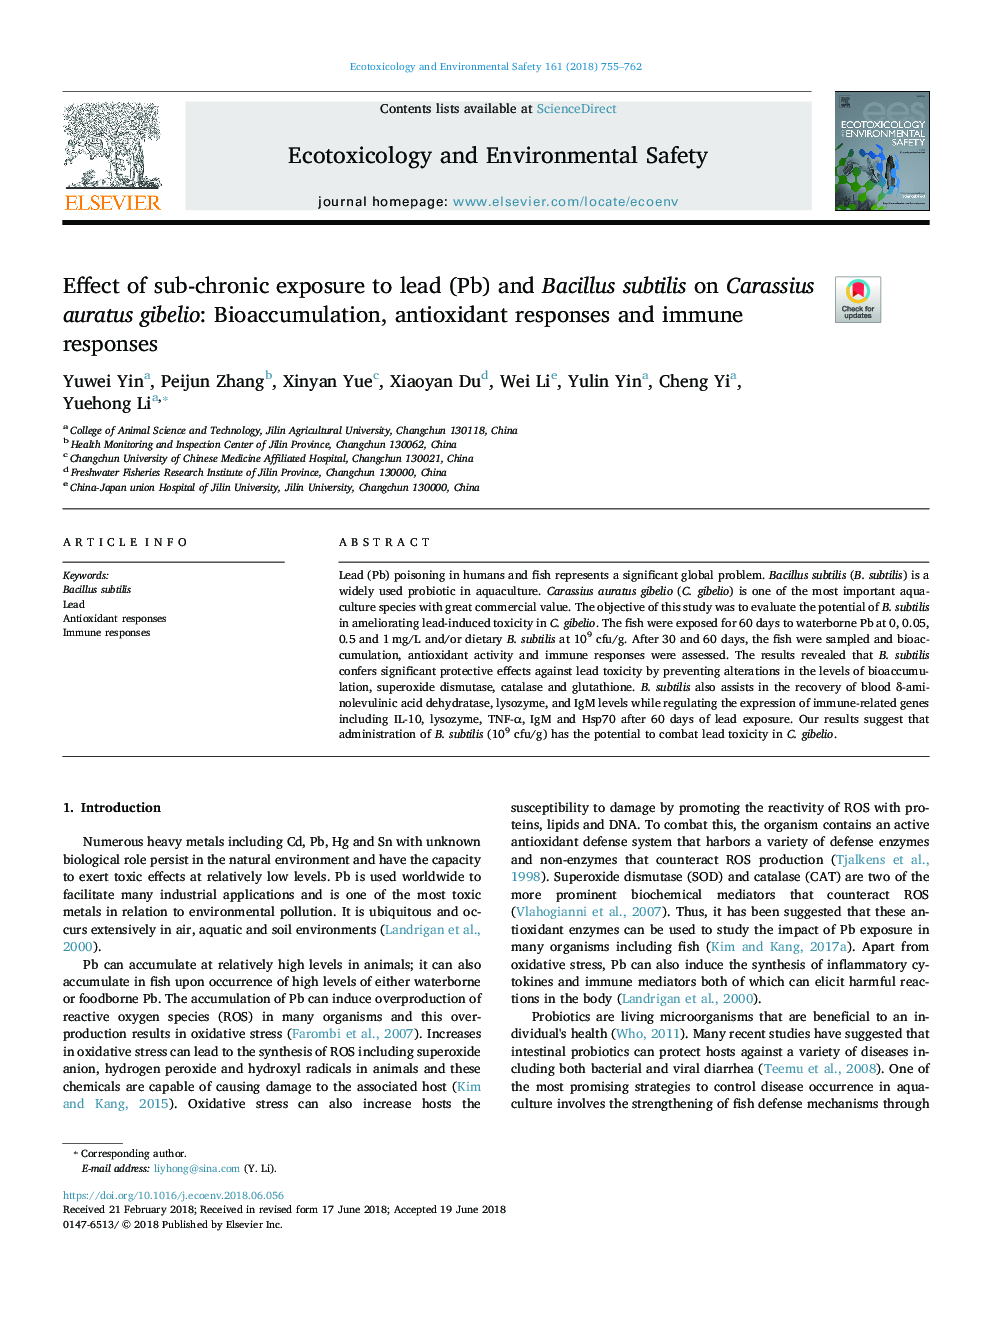 Effect of sub-chronic exposure to lead (Pb) and Bacillus subtilis on Carassius auratus gibelio: Bioaccumulation, antioxidant responses and immune responses